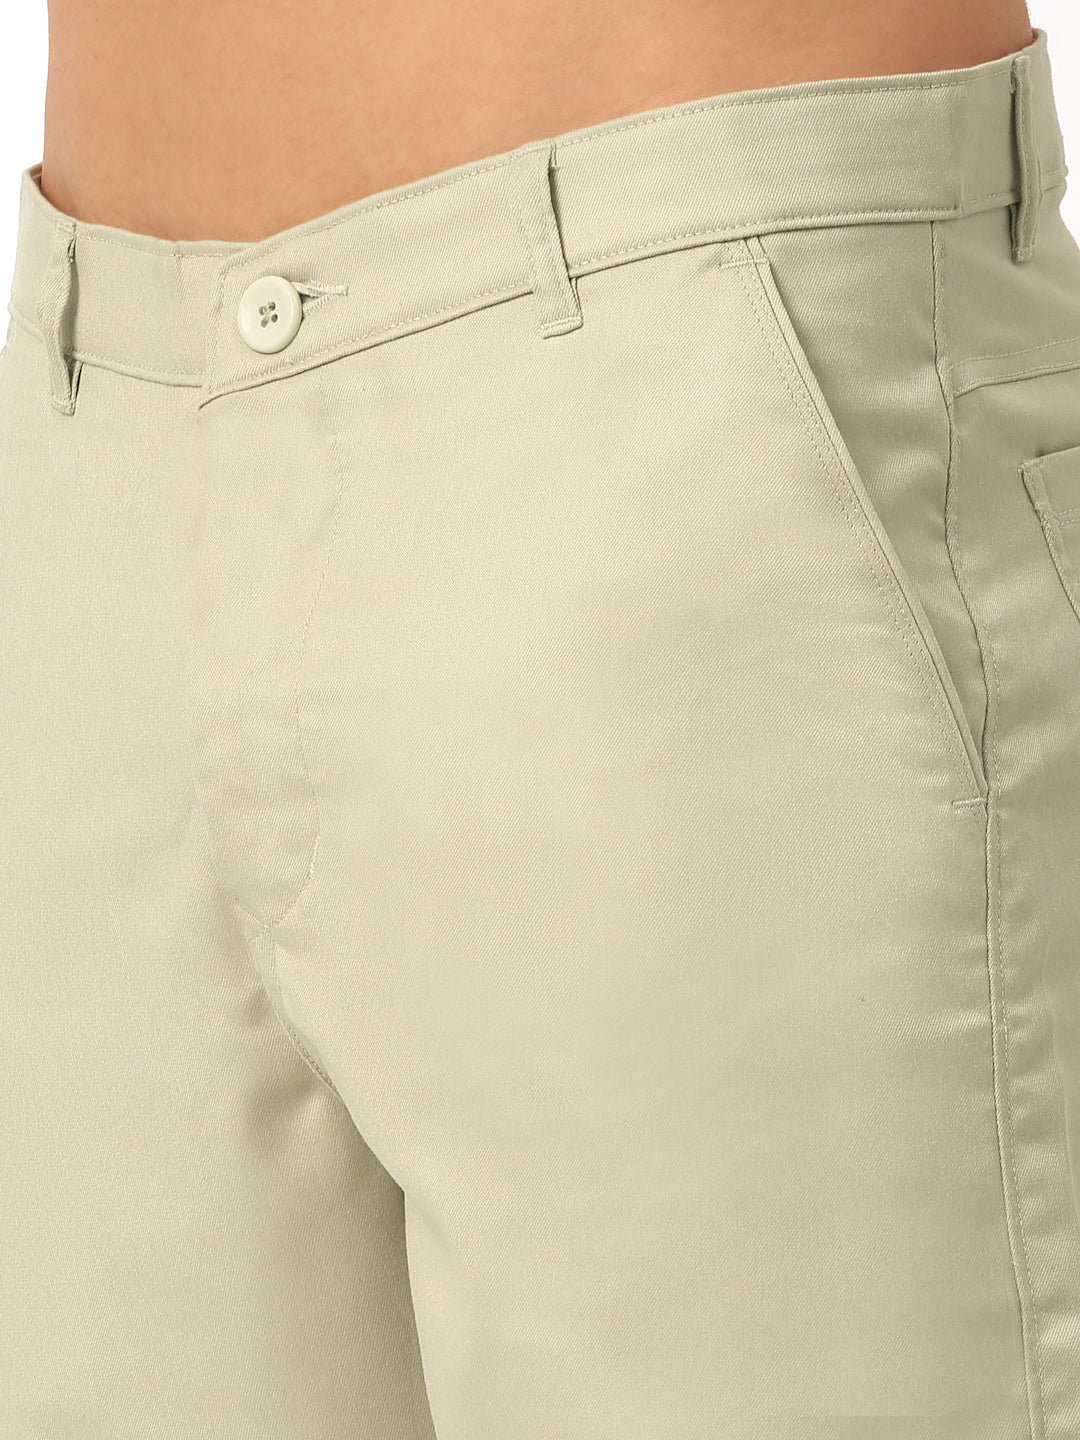 Men's Casual Cotton Solid Shorts ( SGP 153 Cream ) - Jainish